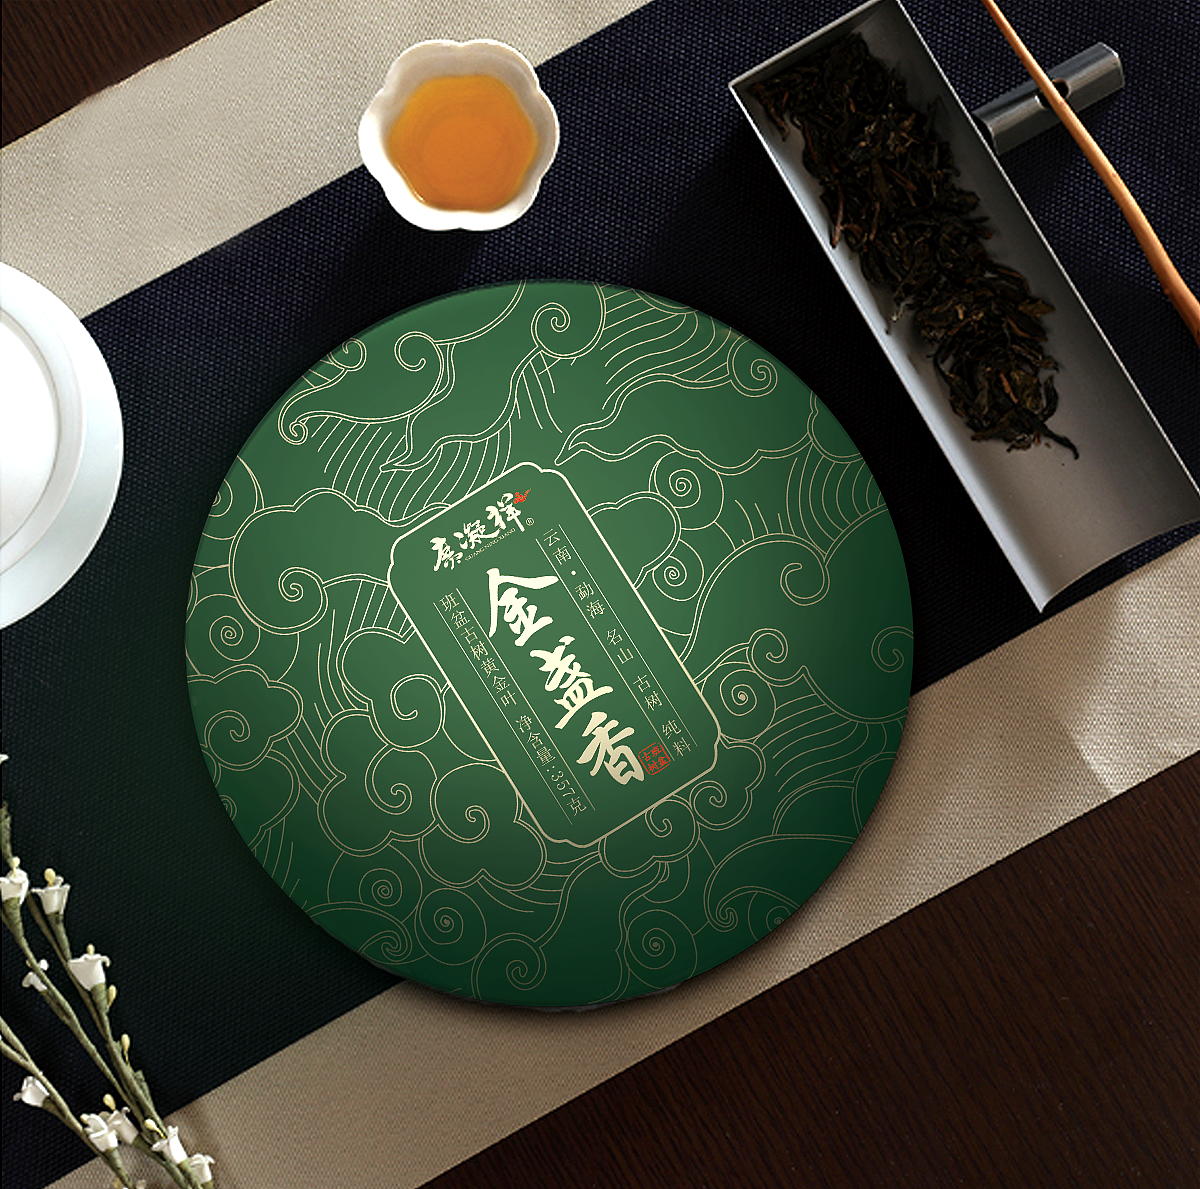 普洱茶标志设计-古田路9号-品牌创意/版权保护平台